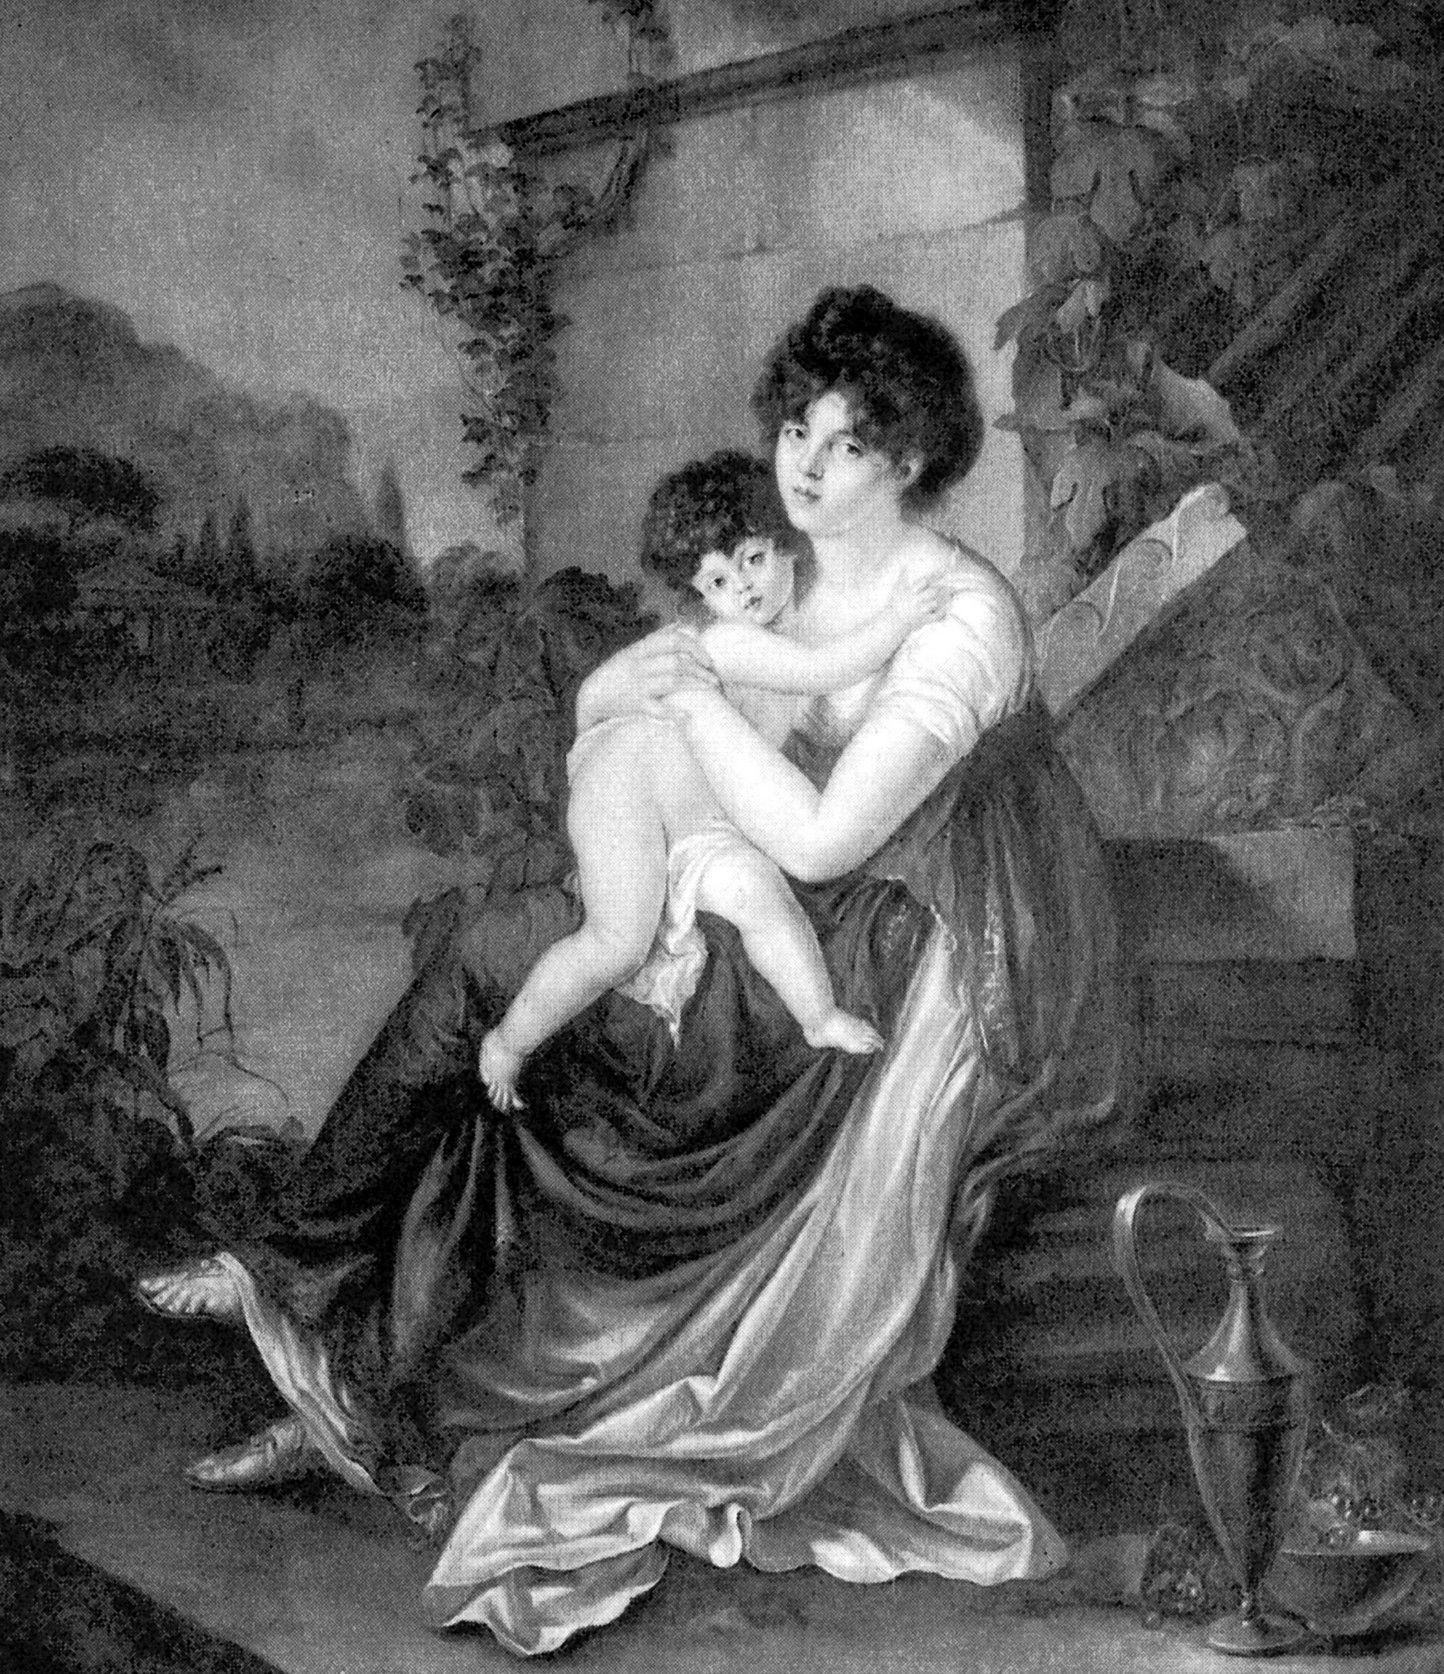 Maria z Czetwertyńskich Naryszkina wraz z jednym ze swych dzieci na ilustracji wykonanej na podstawie obrazu Petera Edwarda Stroehlinga (źródło: domena publiczna).